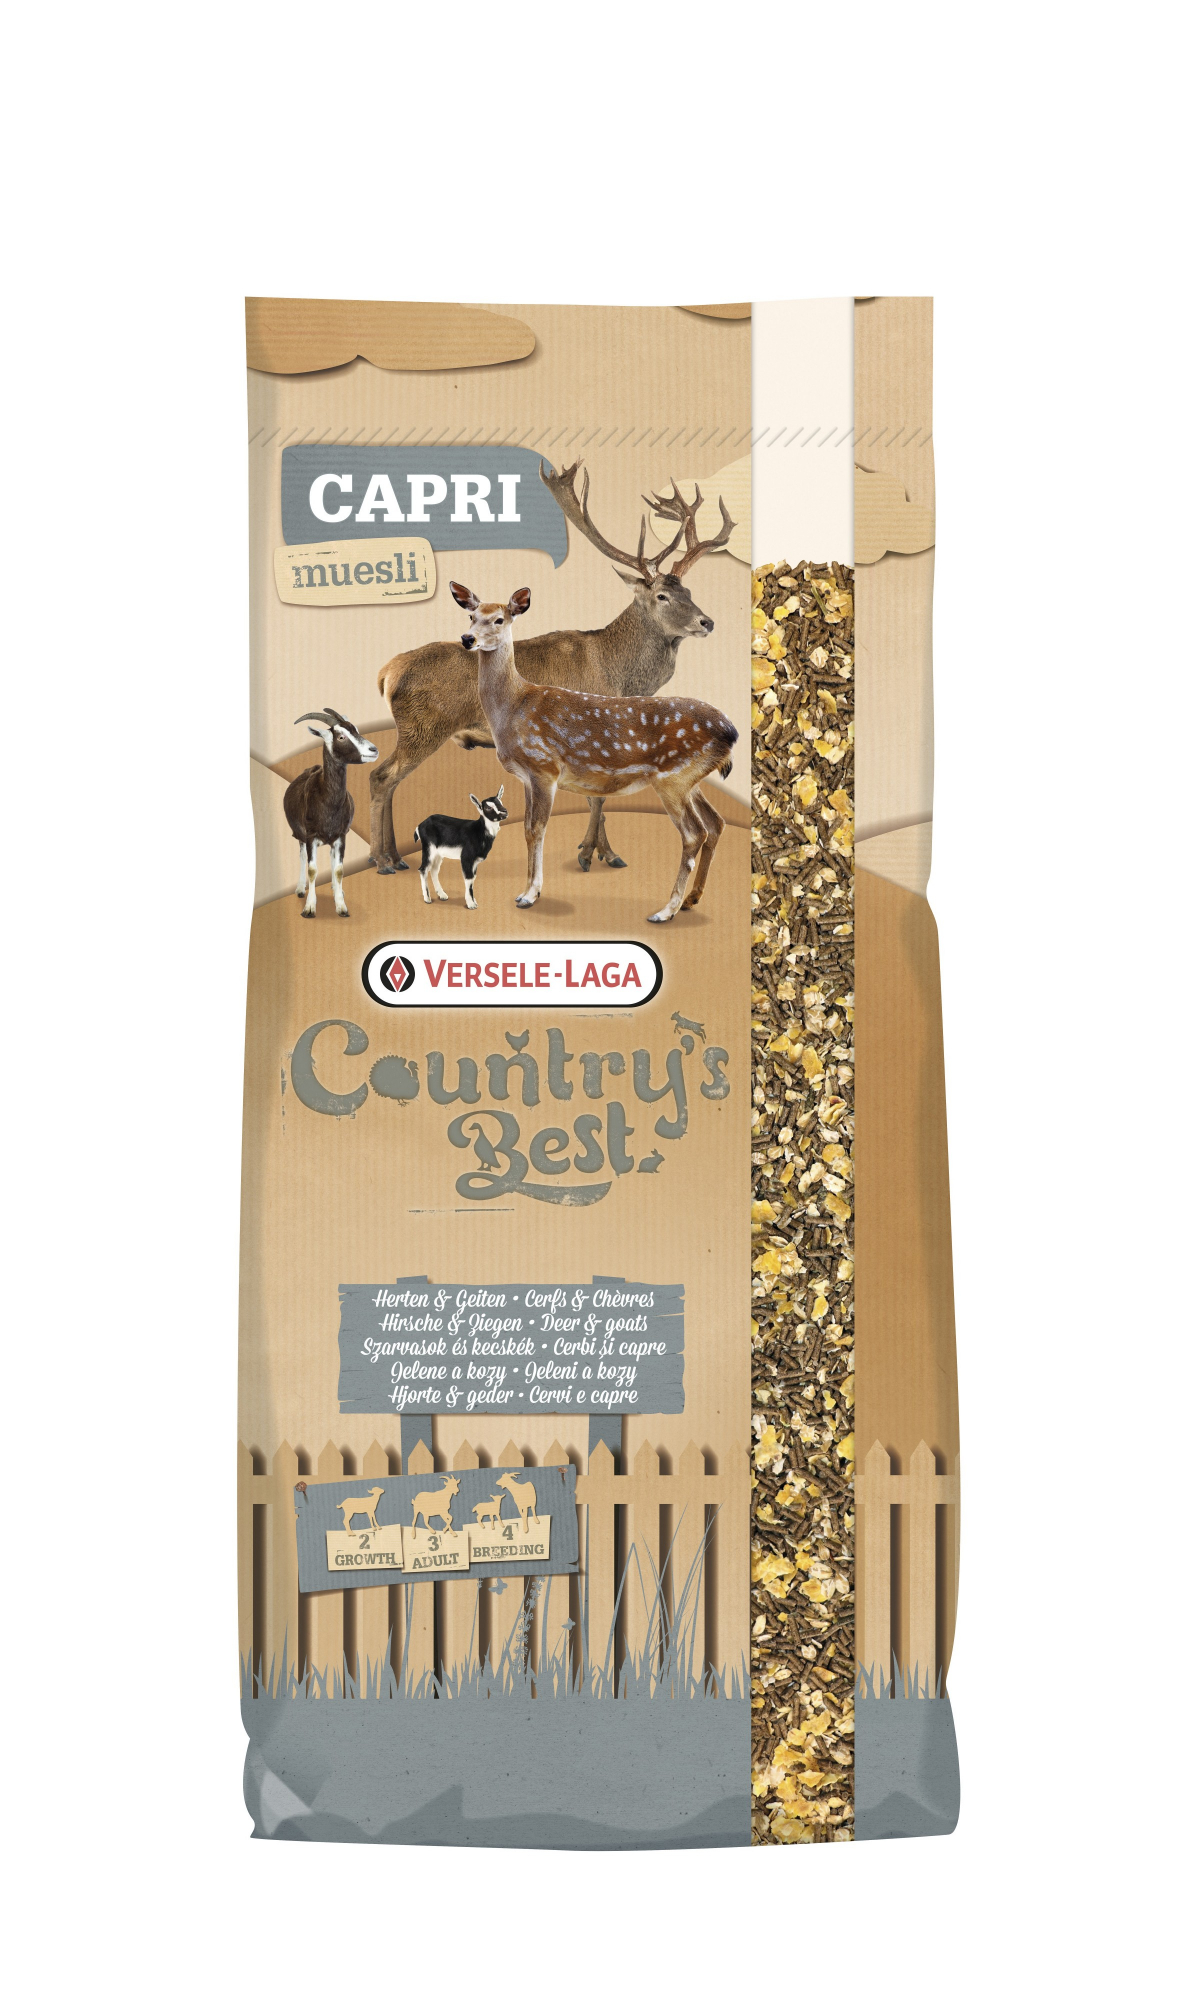 Caprifloc 2 muesli Country's Best Alimento para cabras y ciervos